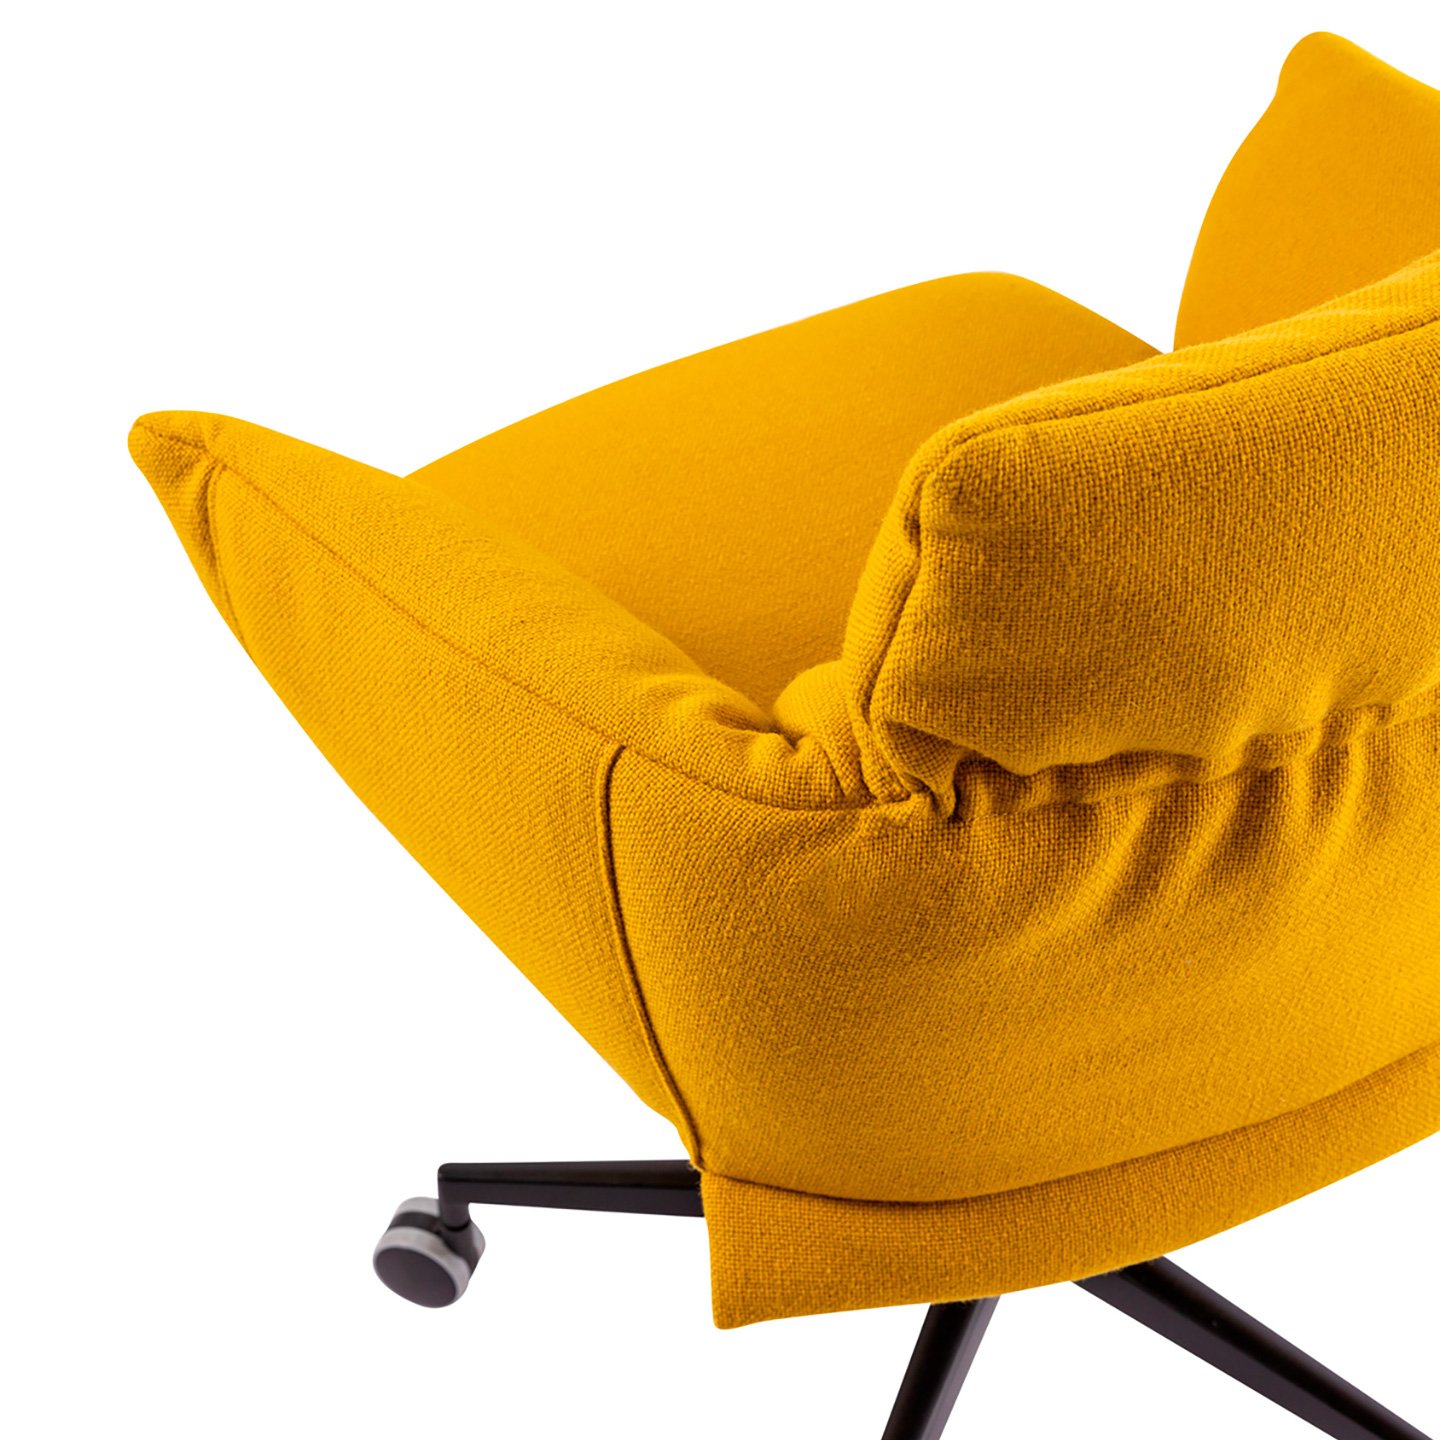 Lud'ina es una silla diseñada para la oficina, un despacho en casala o incluso un salón comedor.